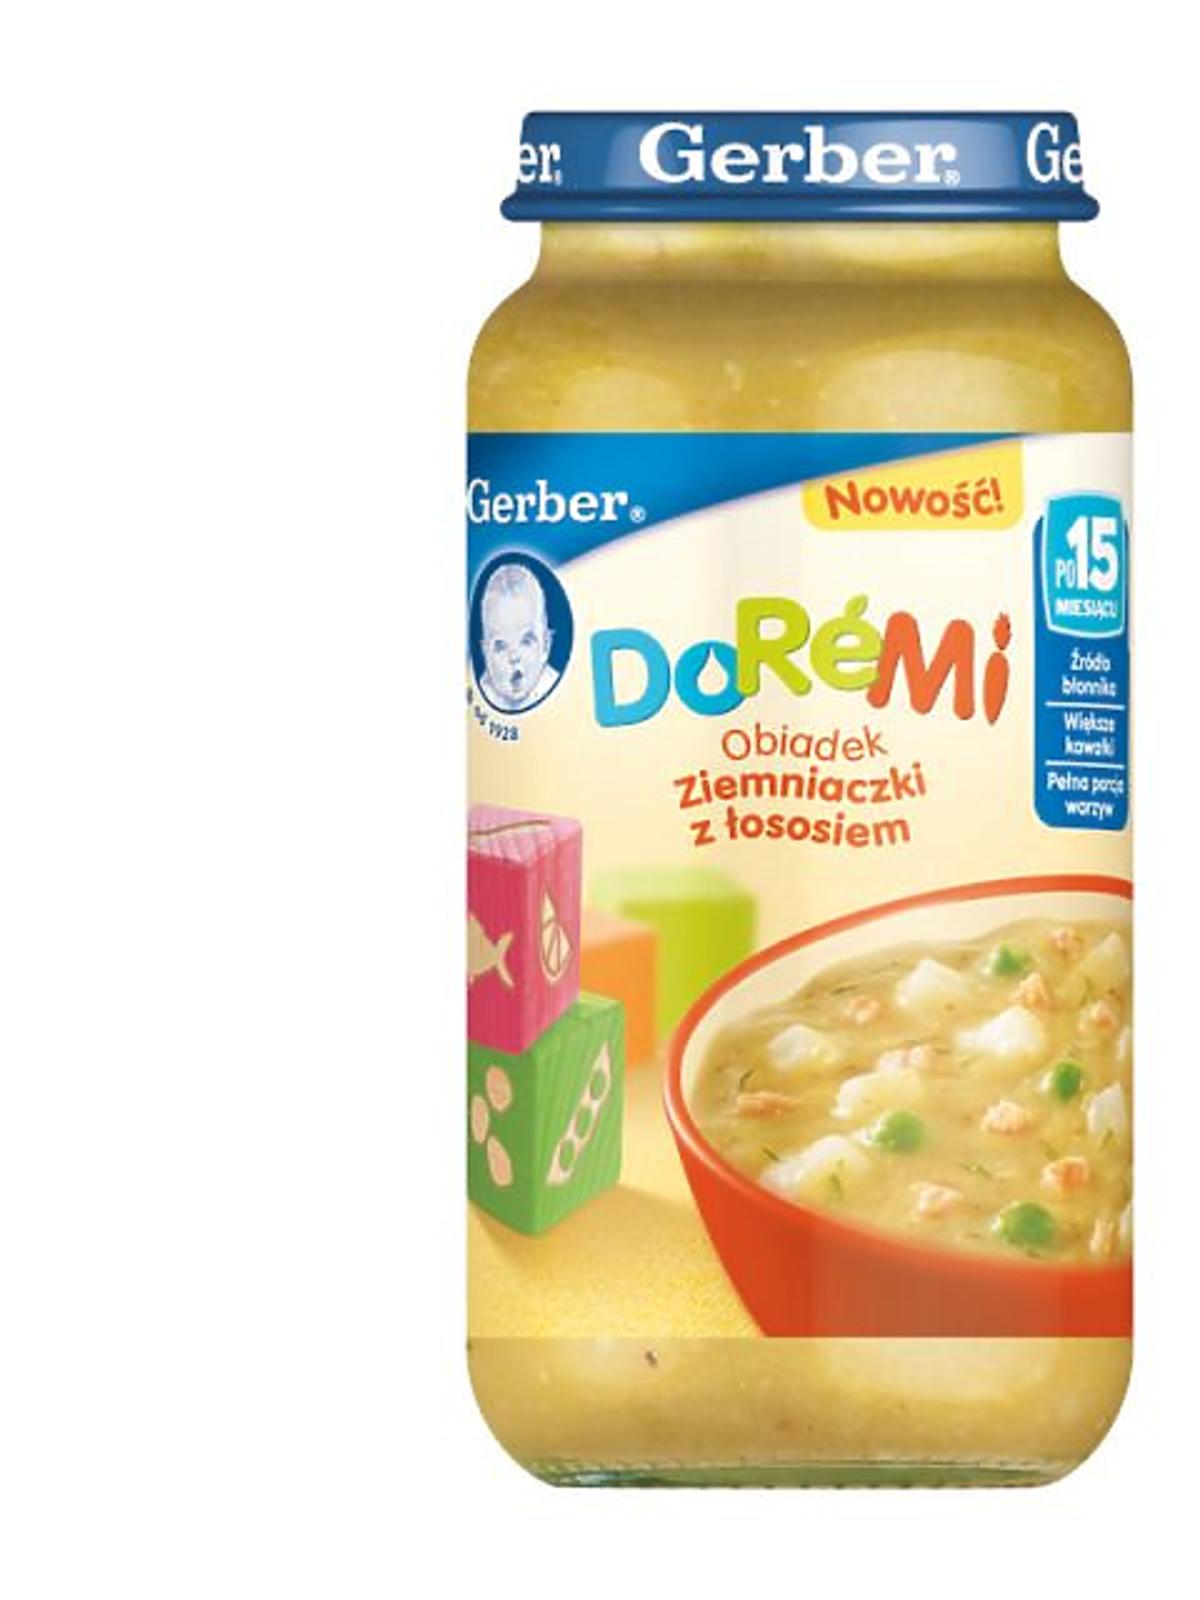 DoReMi-Ziemniaczki-z-lososiem-250g.jpg